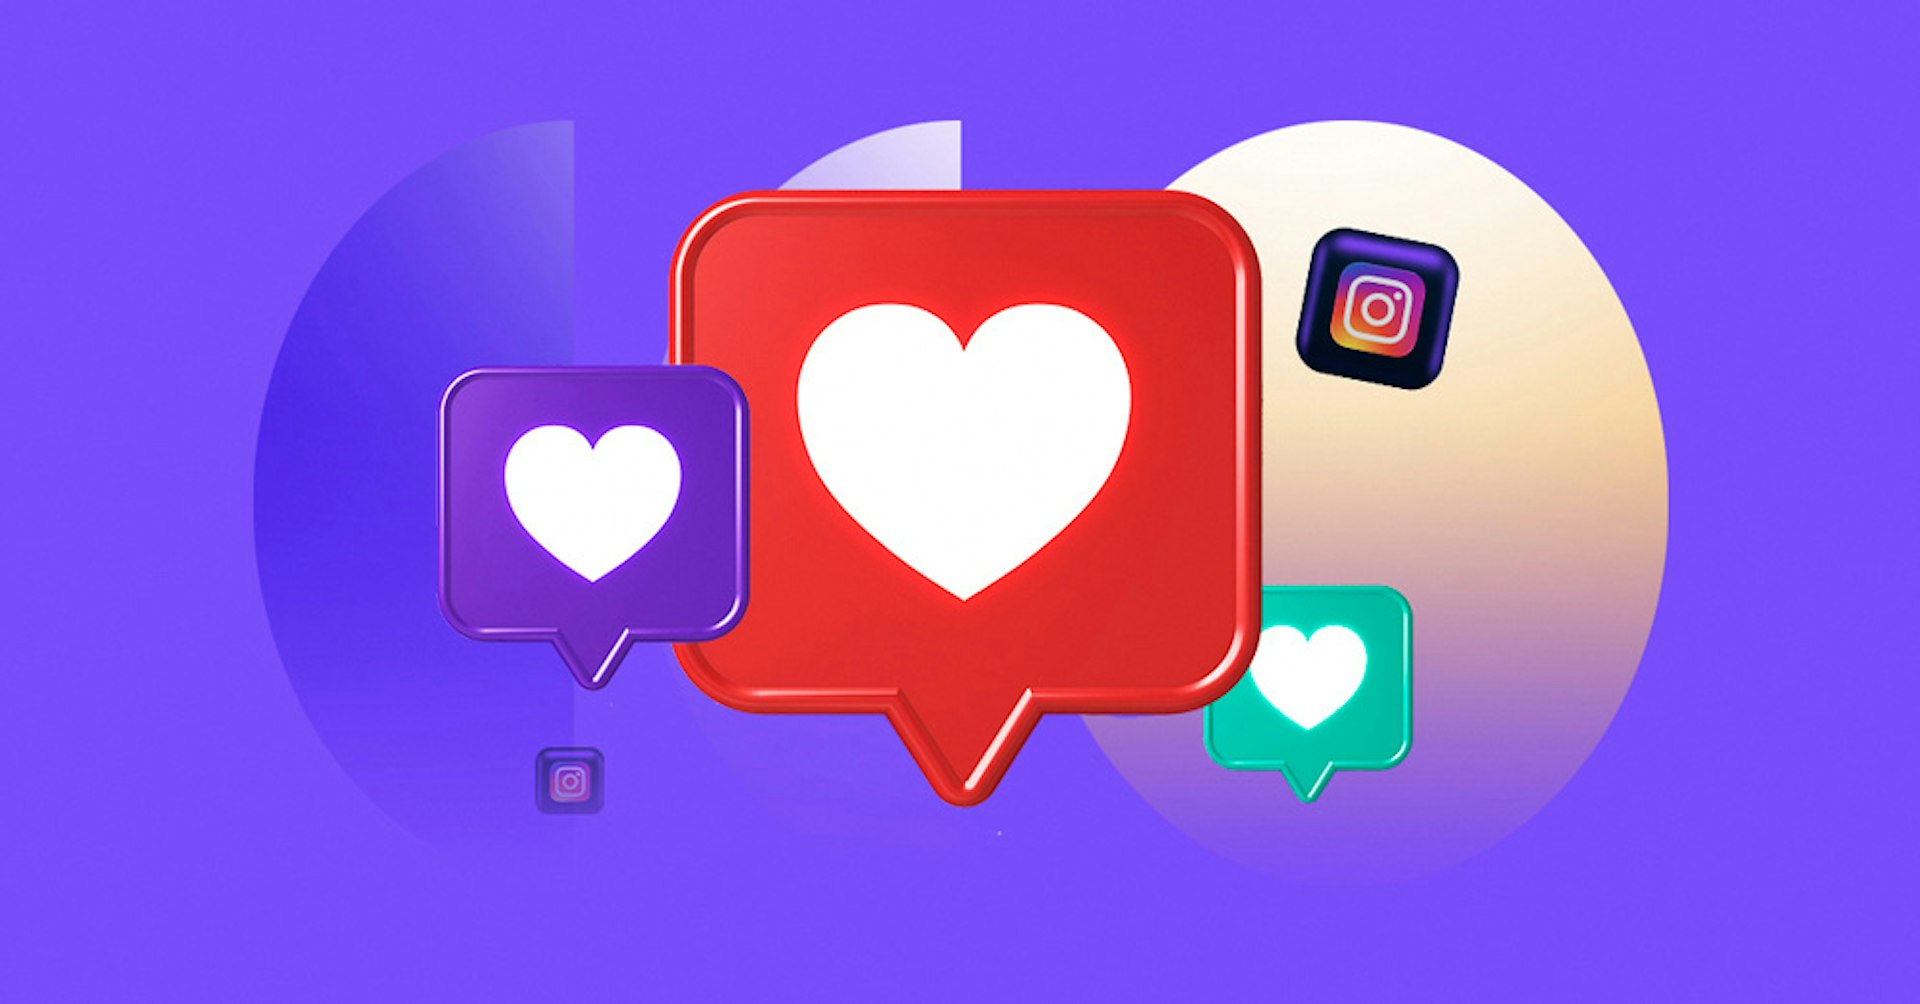 Renueva tu feed de Instagram para potenciar tu comunidad digital